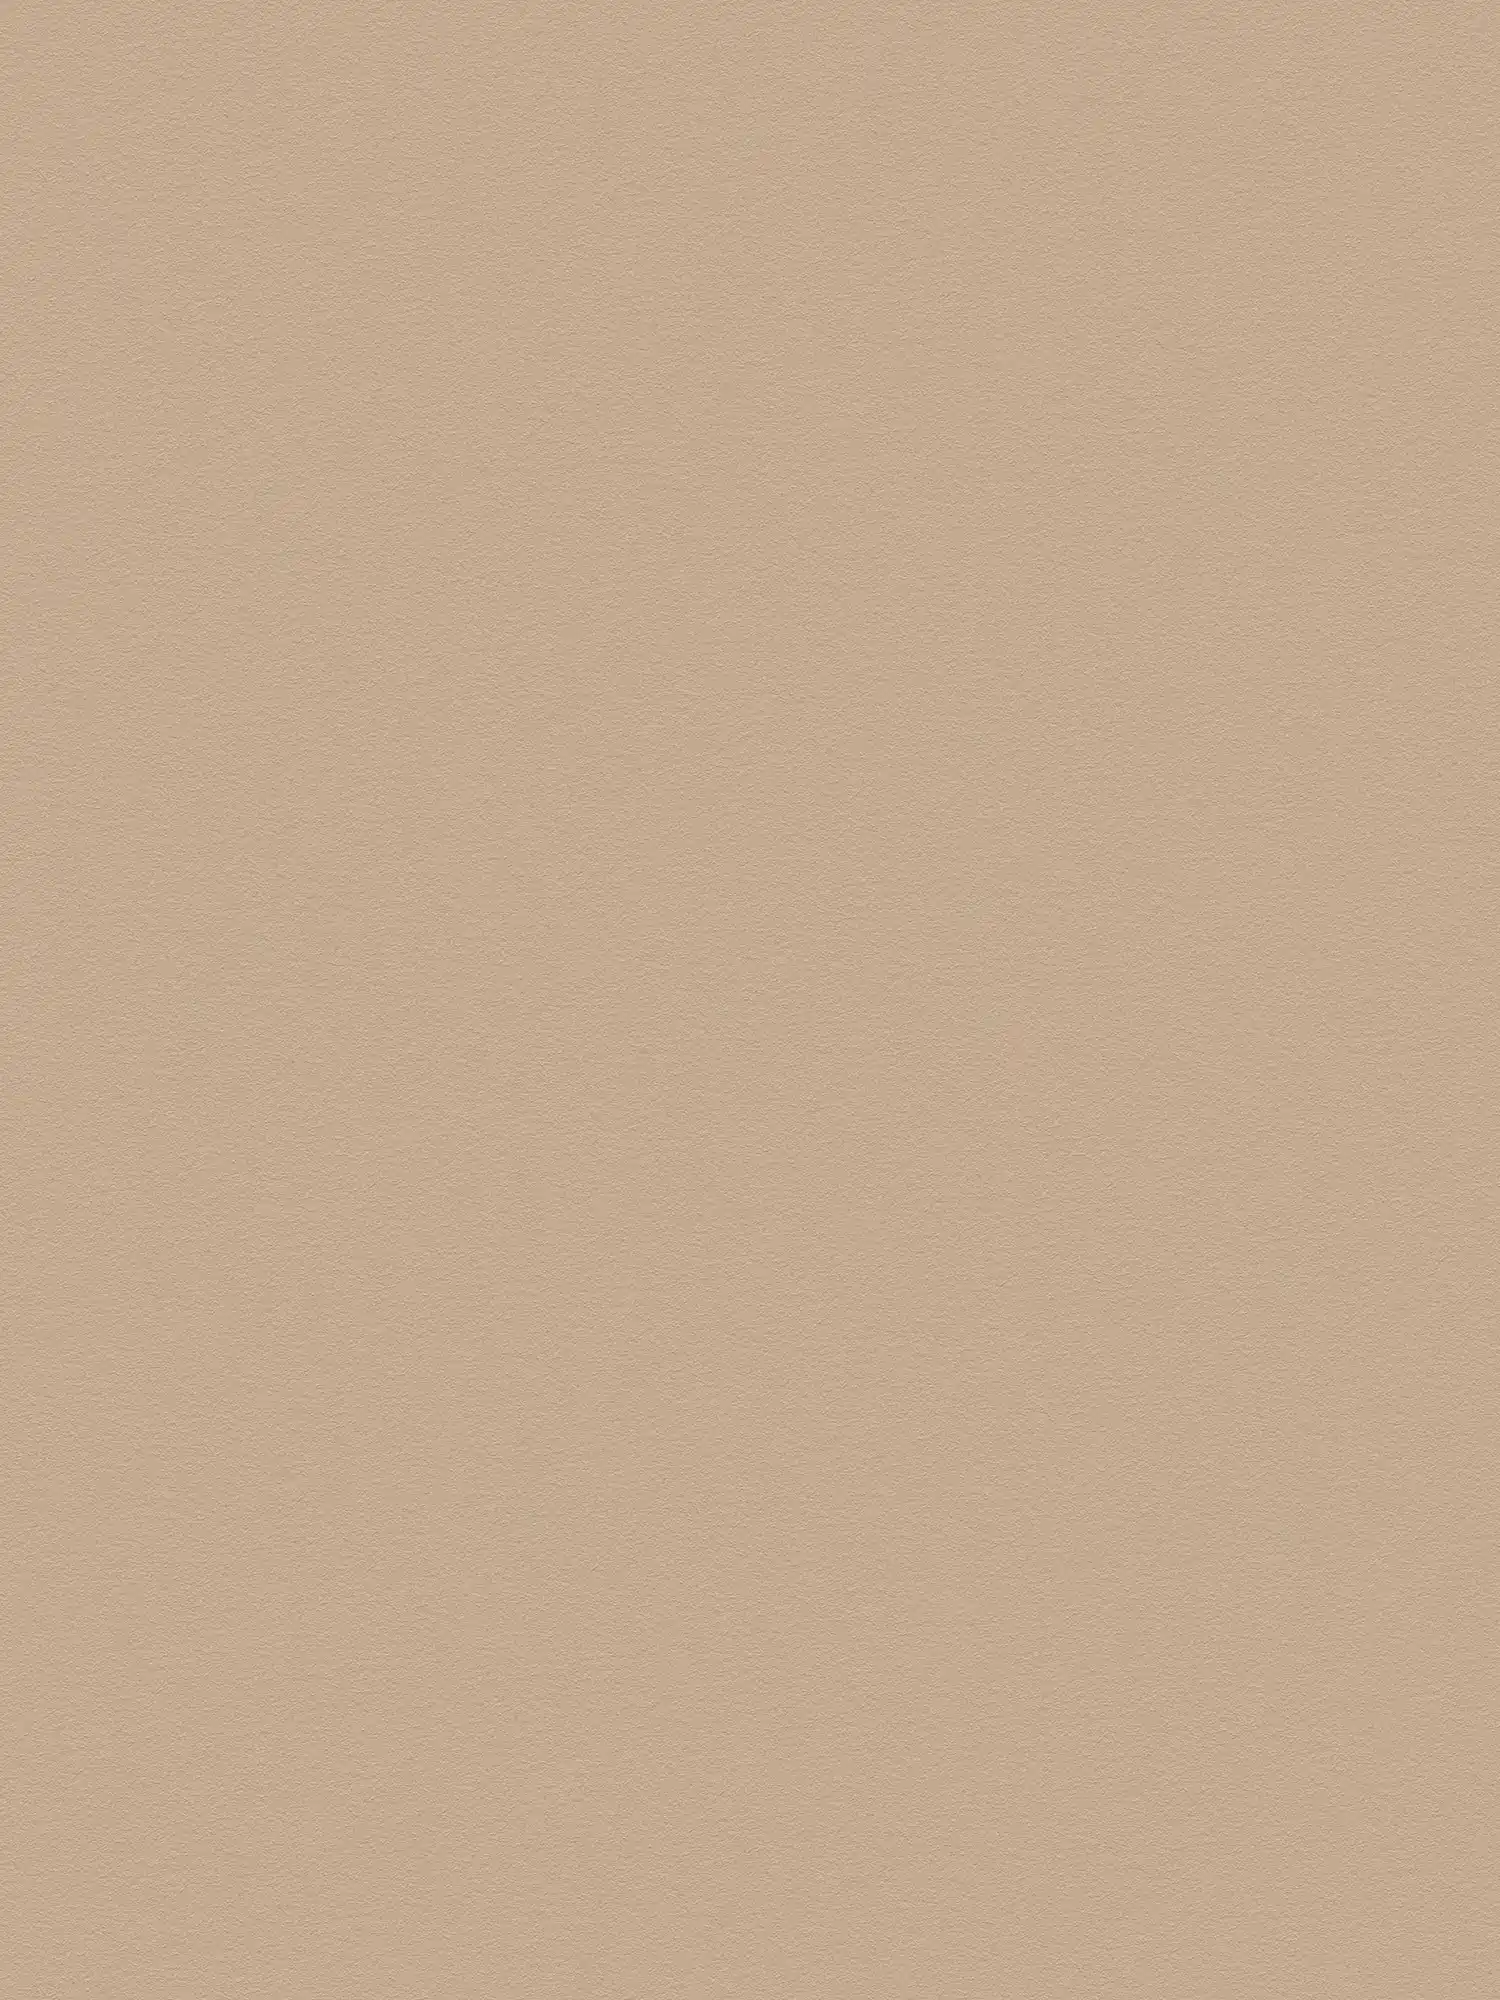 Effen behangpapier lichtbruin met glad oppervlak - beige, bruin
